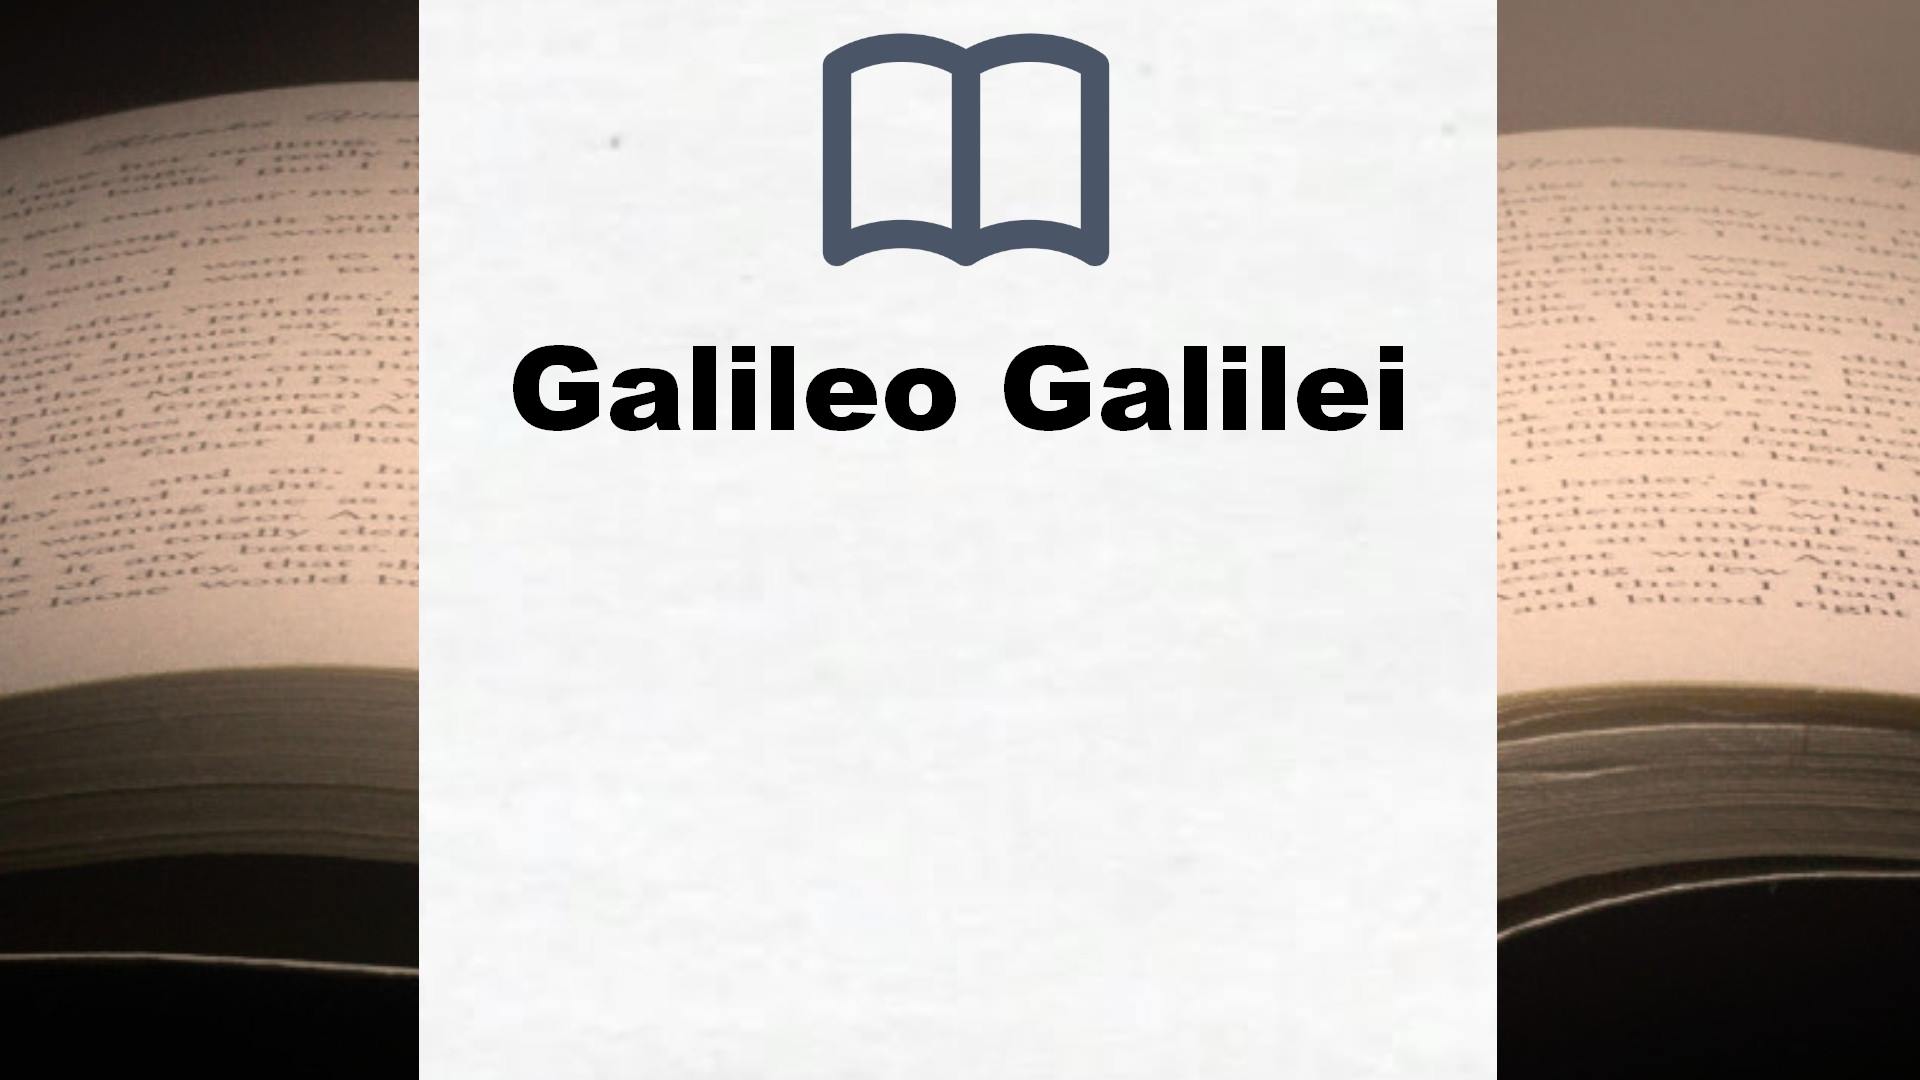 Bücher über Galileo Galilei